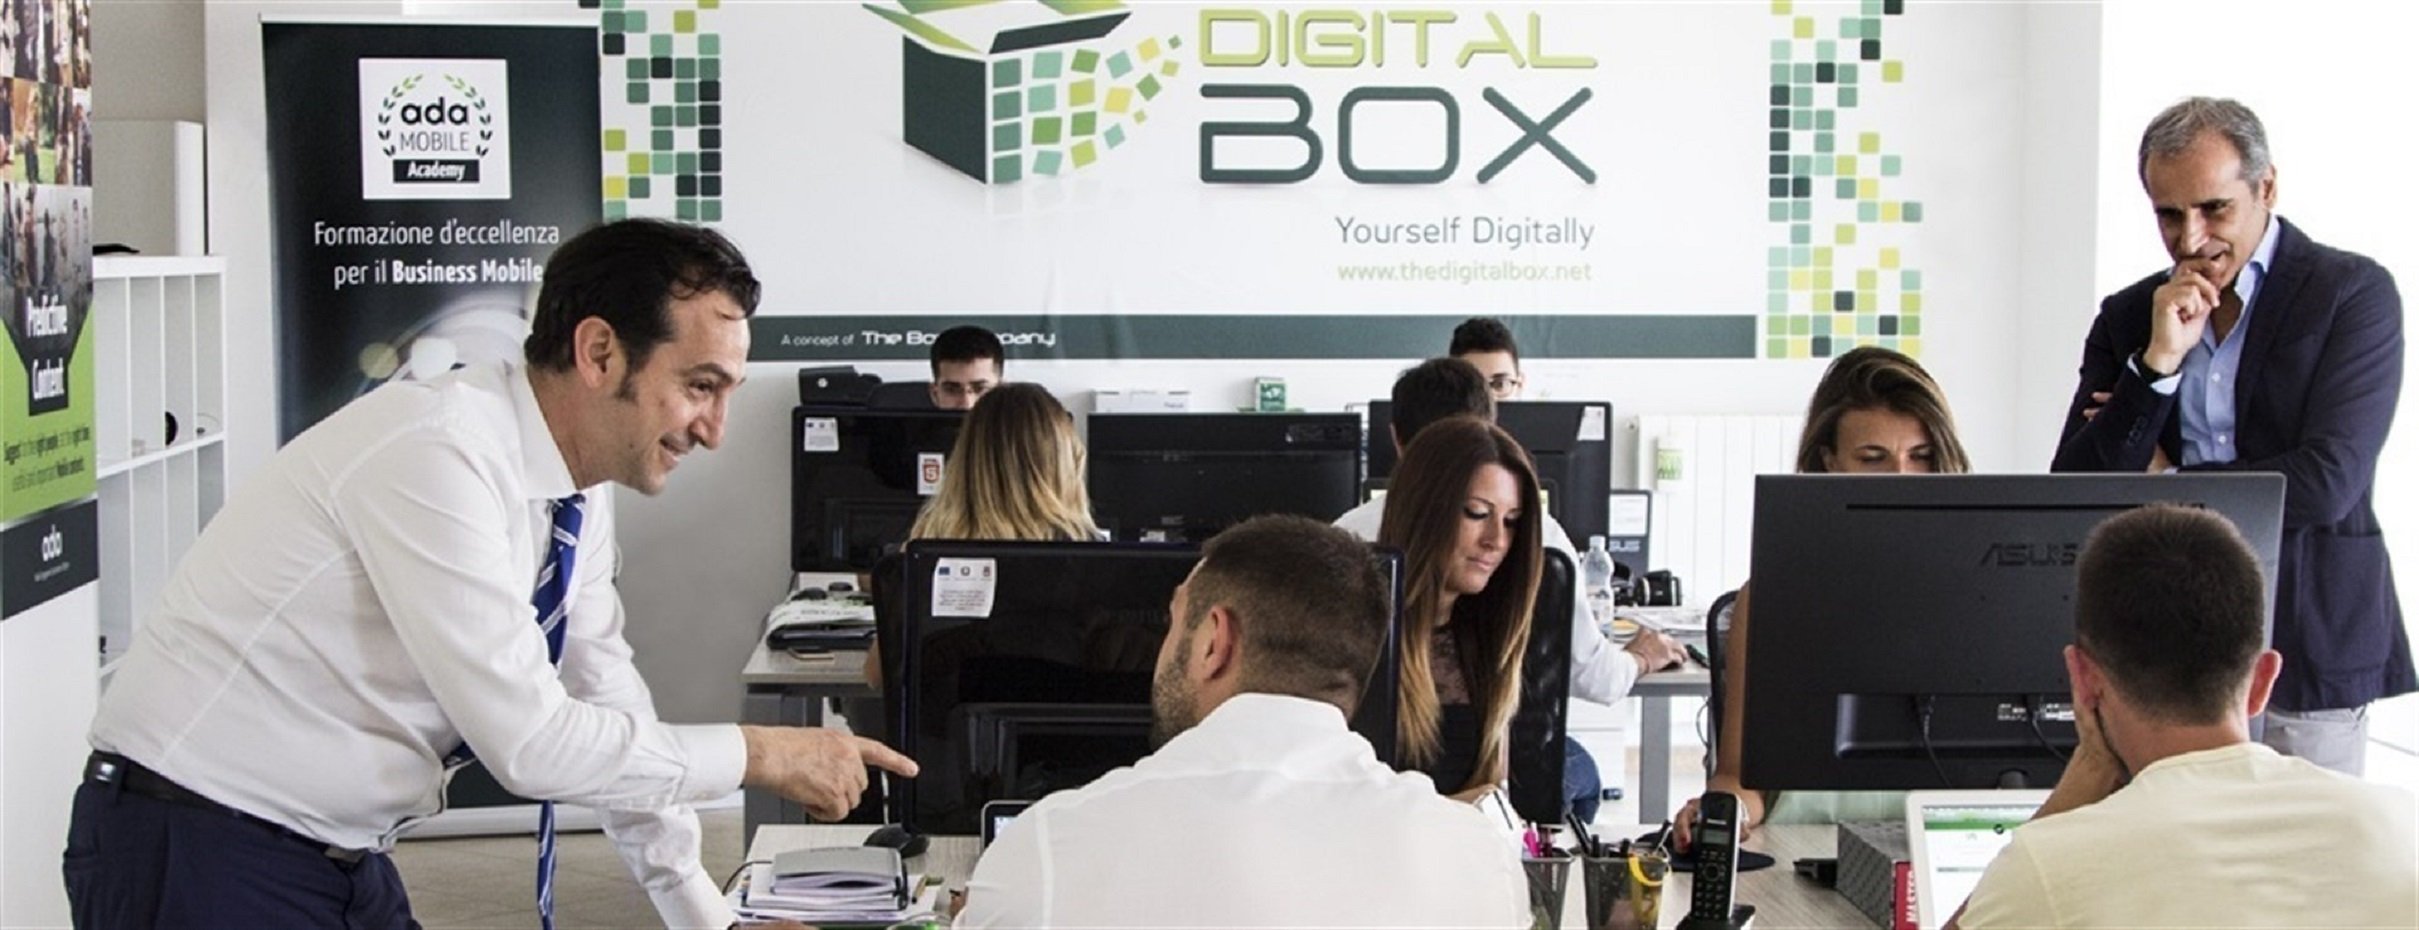 The Digital Box cambiará la sede de Catalunya si se declara la independencia